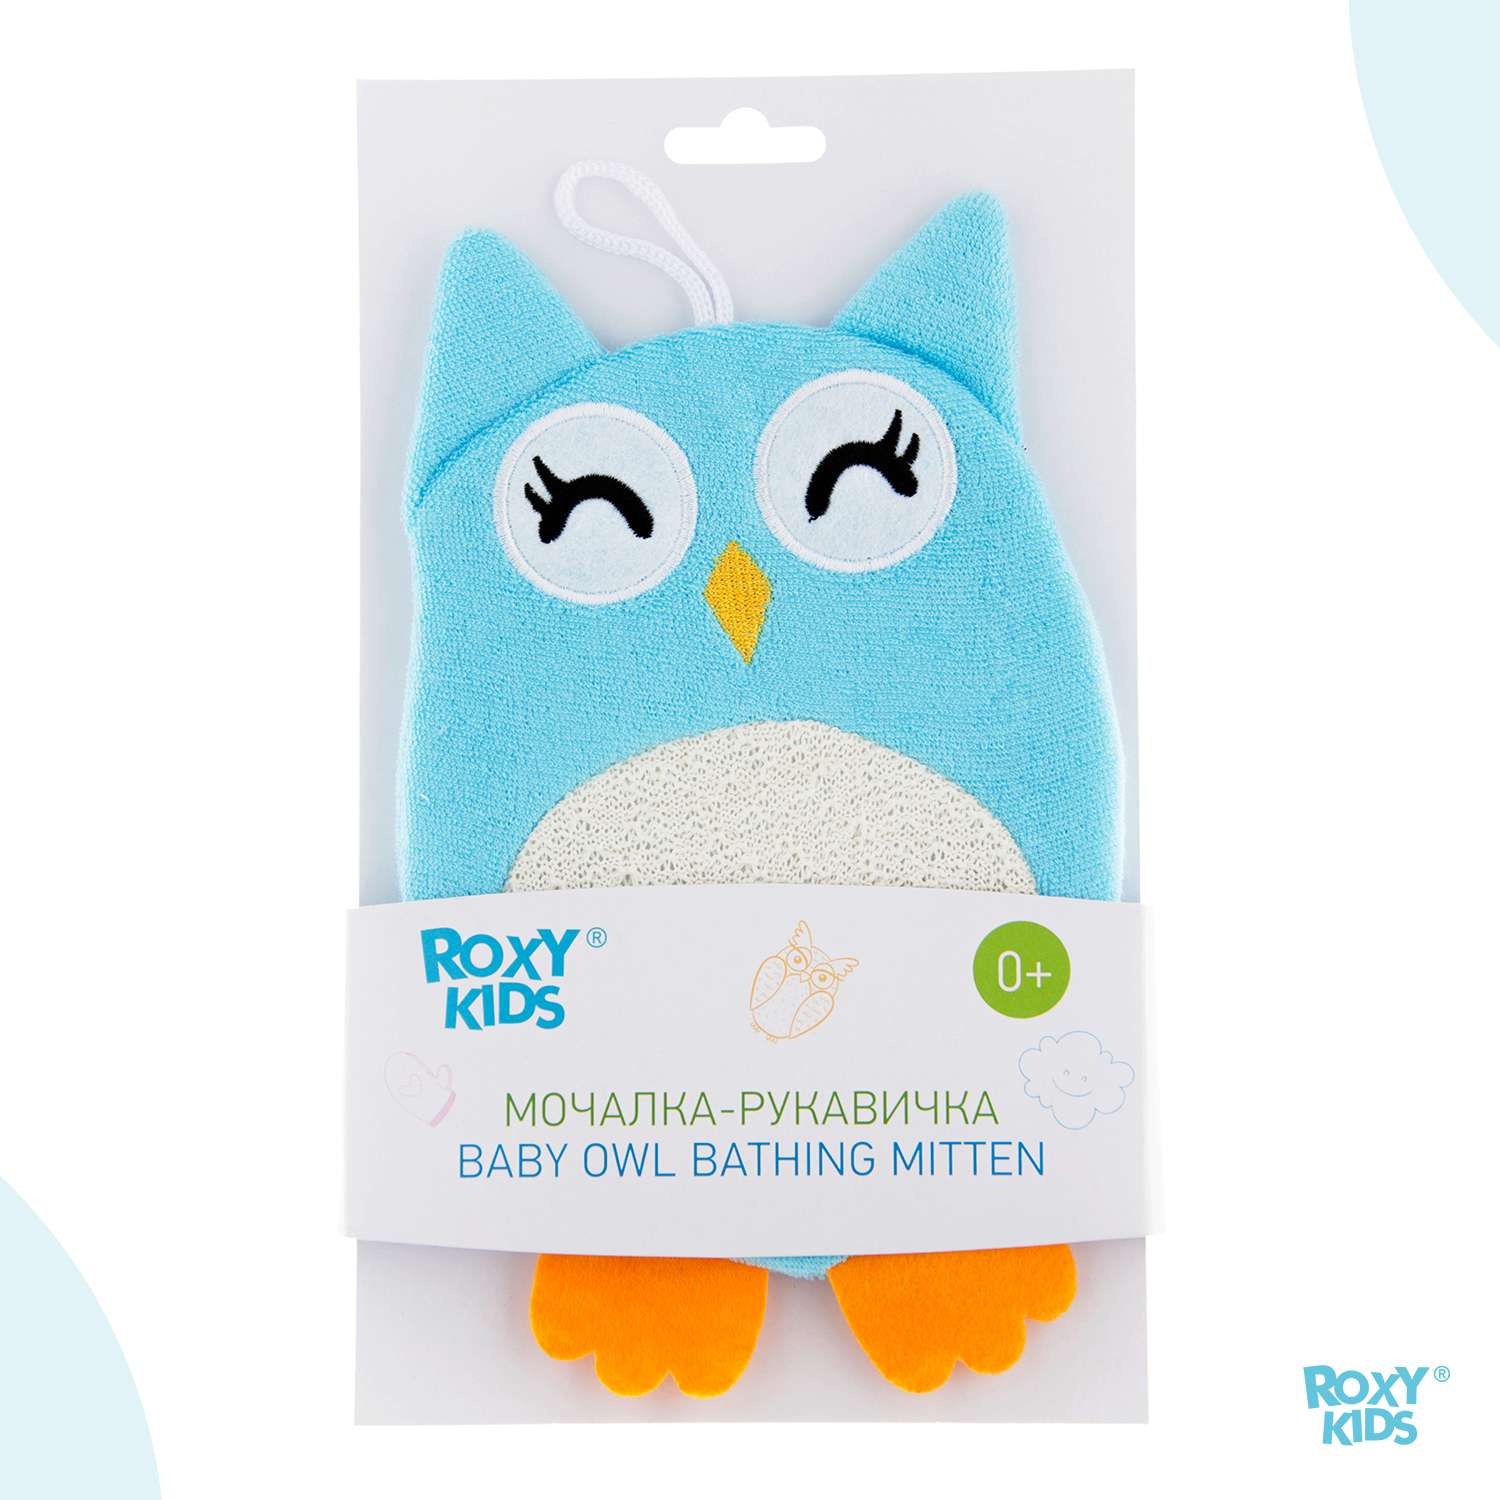 Мочалка-рукавичка ROXY-KIDS детская для купания малышей Baby Owl - фото 9